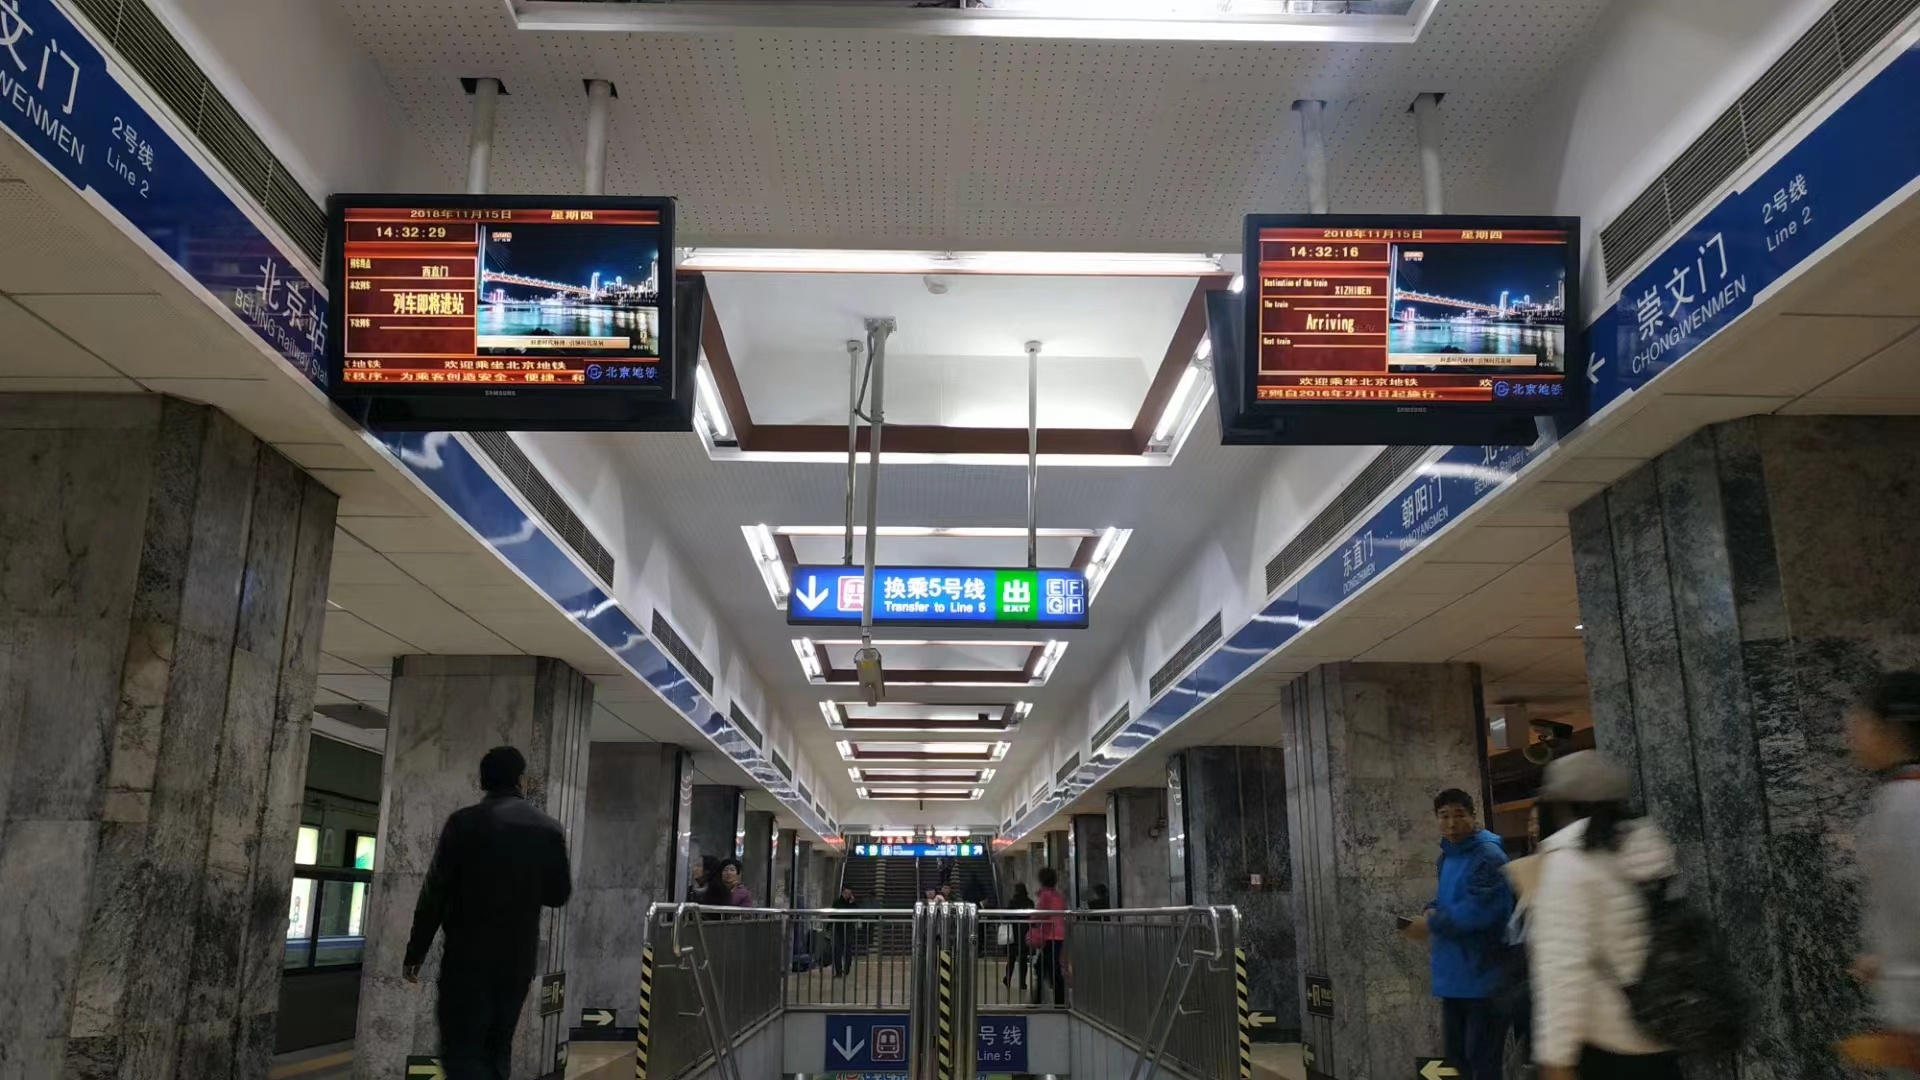 北京地鐵電視廣告介紹及案例